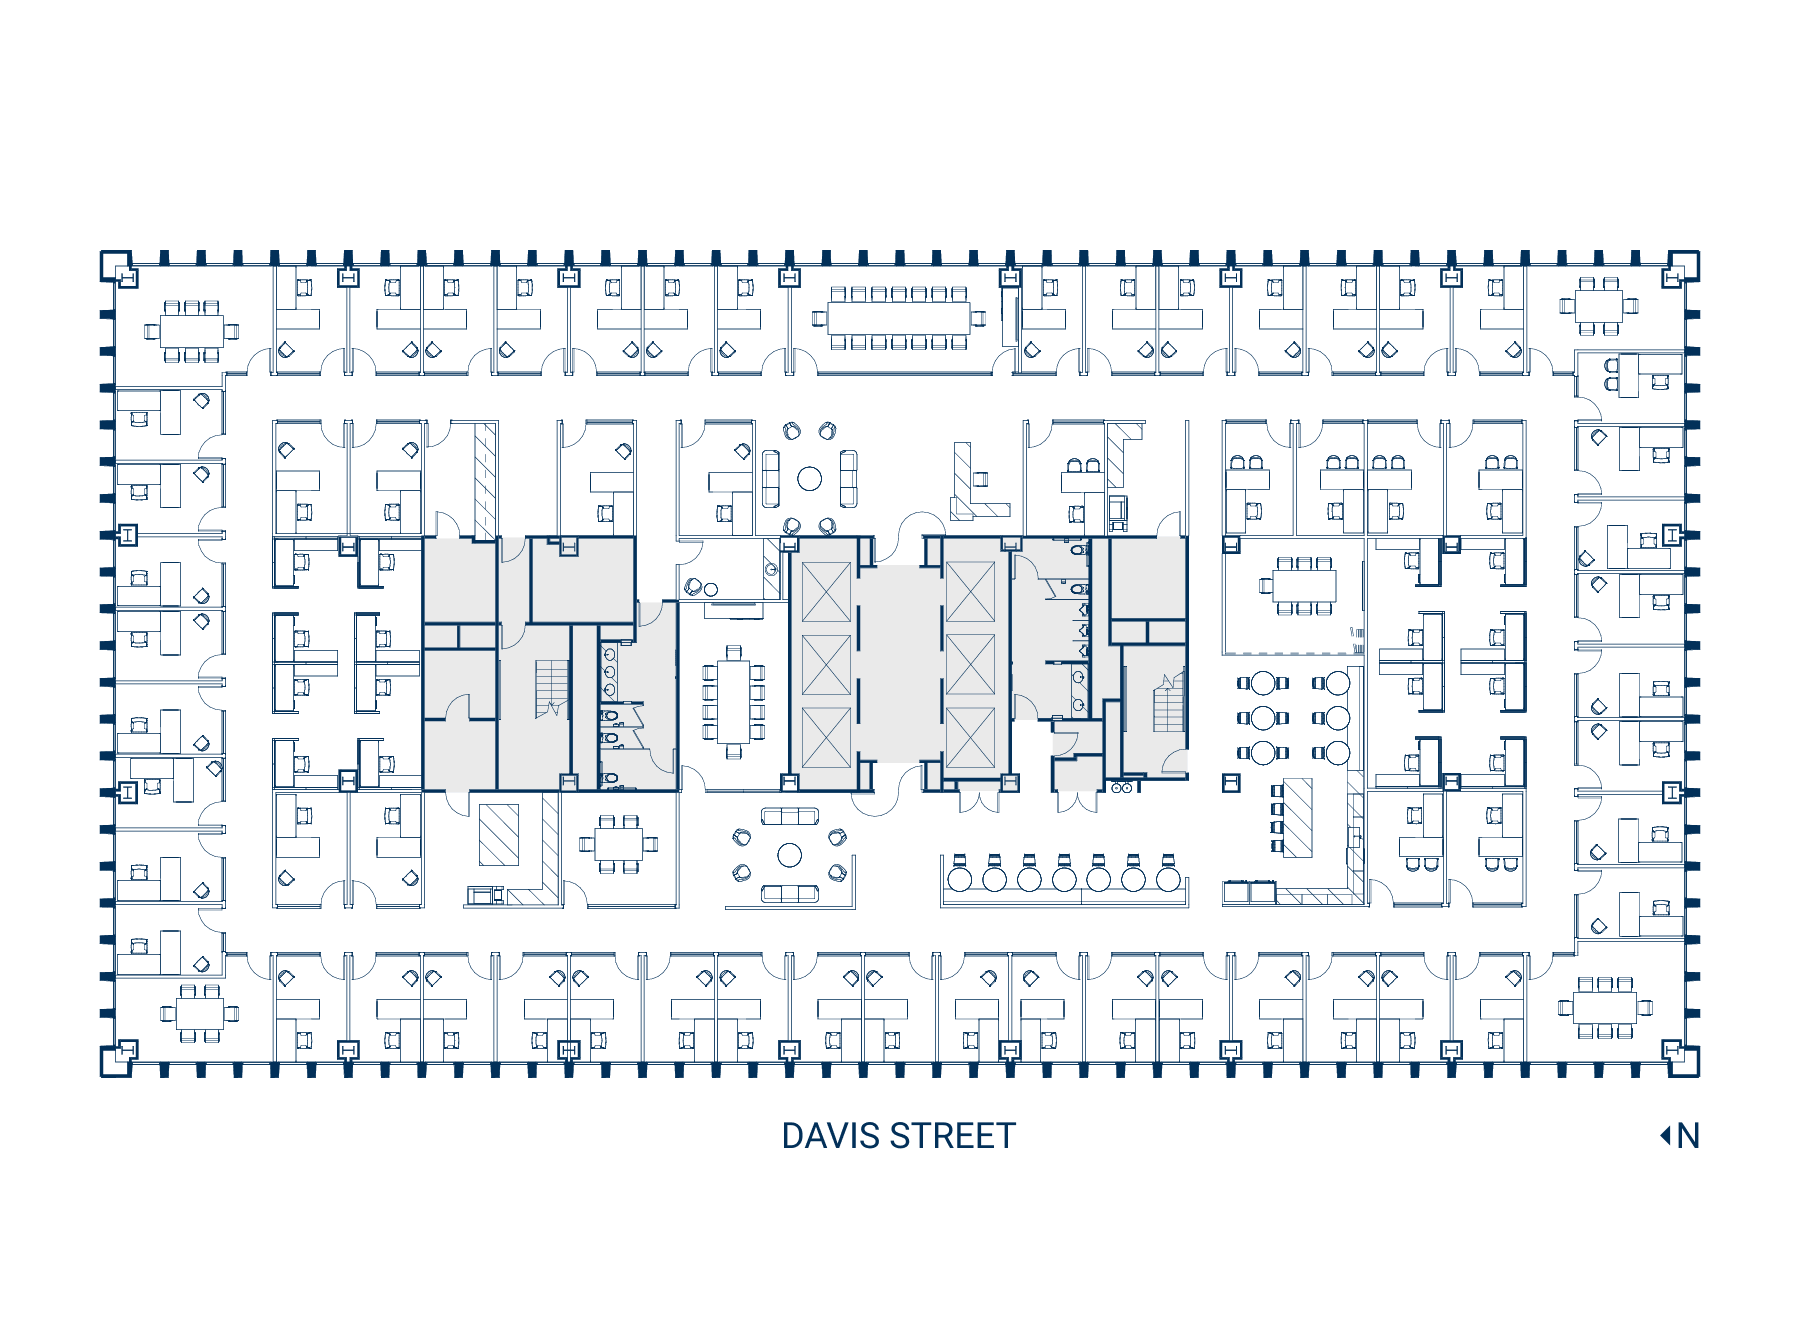 Floor 28 Suite 2800 Floor Plan - Hypothetical Private Office (Web)